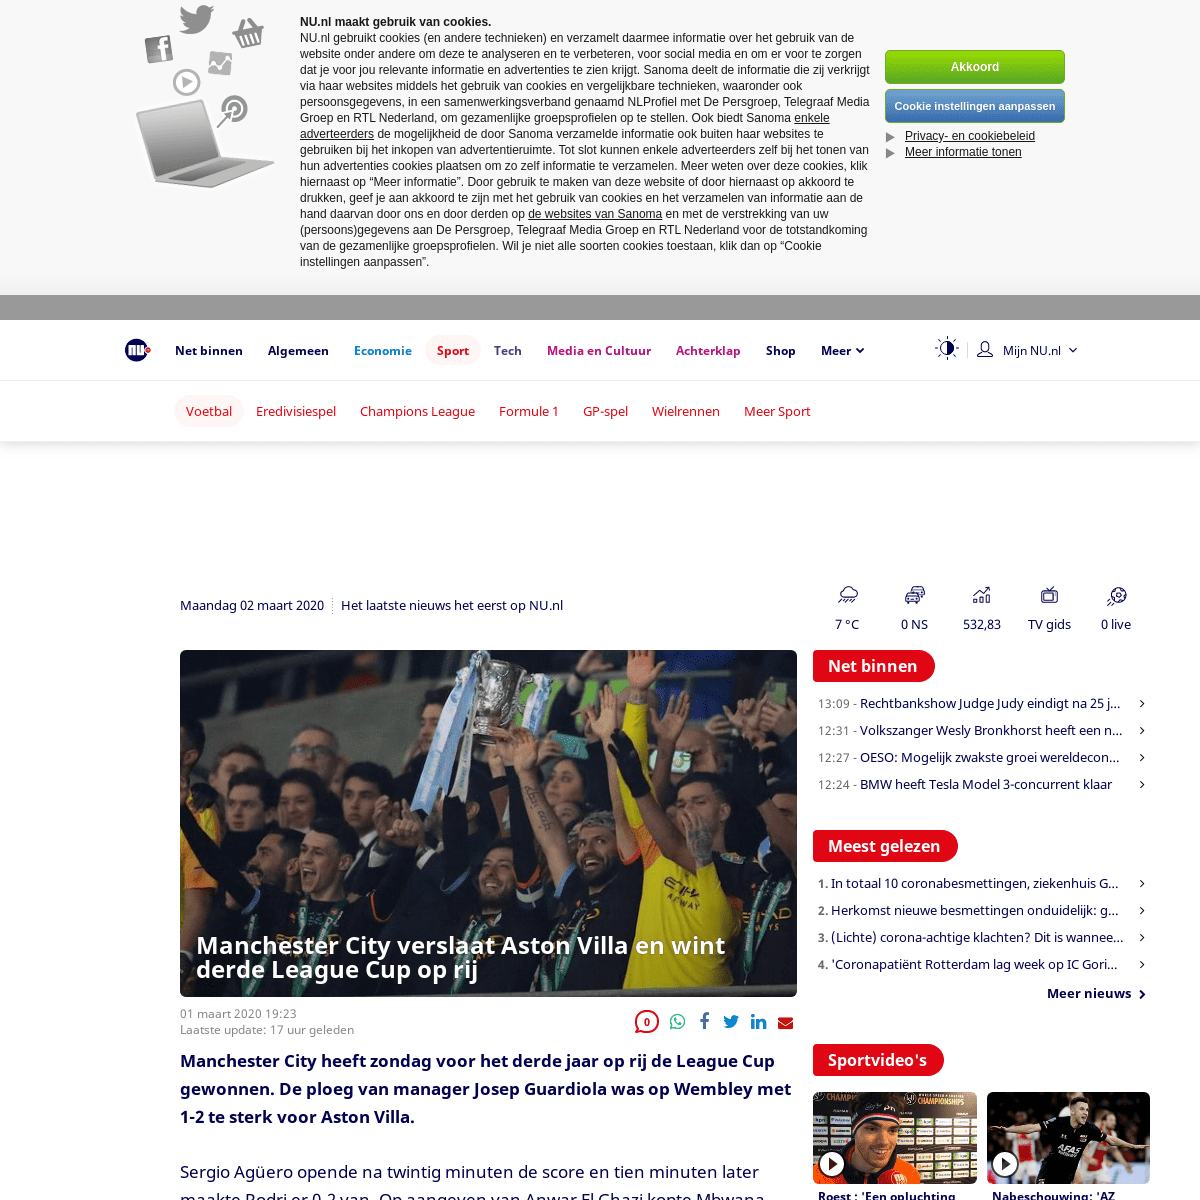 A complete backup of www.nu.nl/voetbal/6034394/manchester-city-verslaat-aston-villa-en-wint-derde-league-cup-op-rij.html